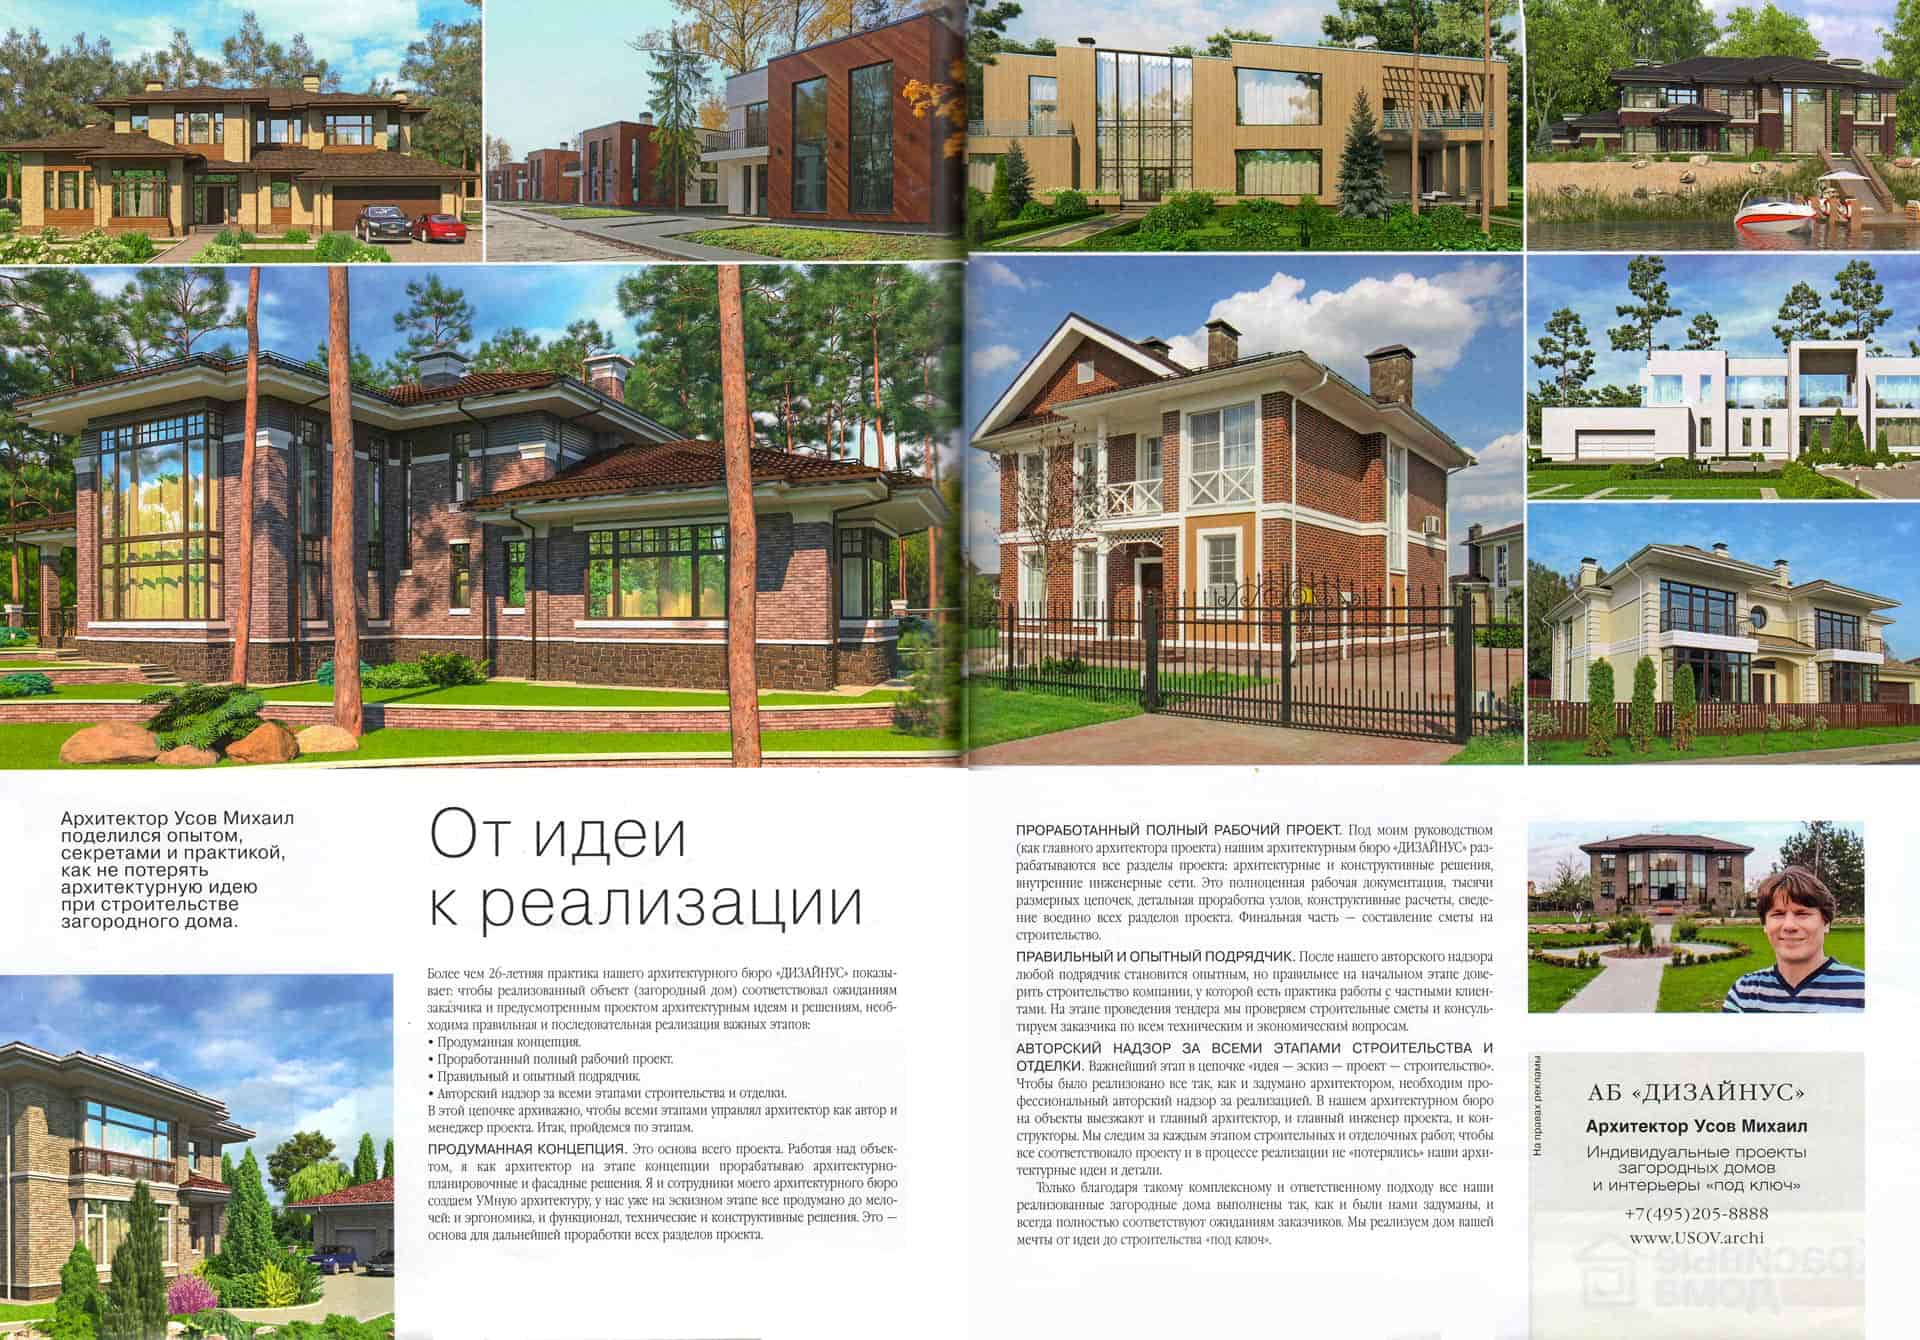 Архитектор Усов Михаил поделился опытом. секретами и практикой, как не потерять архитектурную идею при строительстве загородного дома.